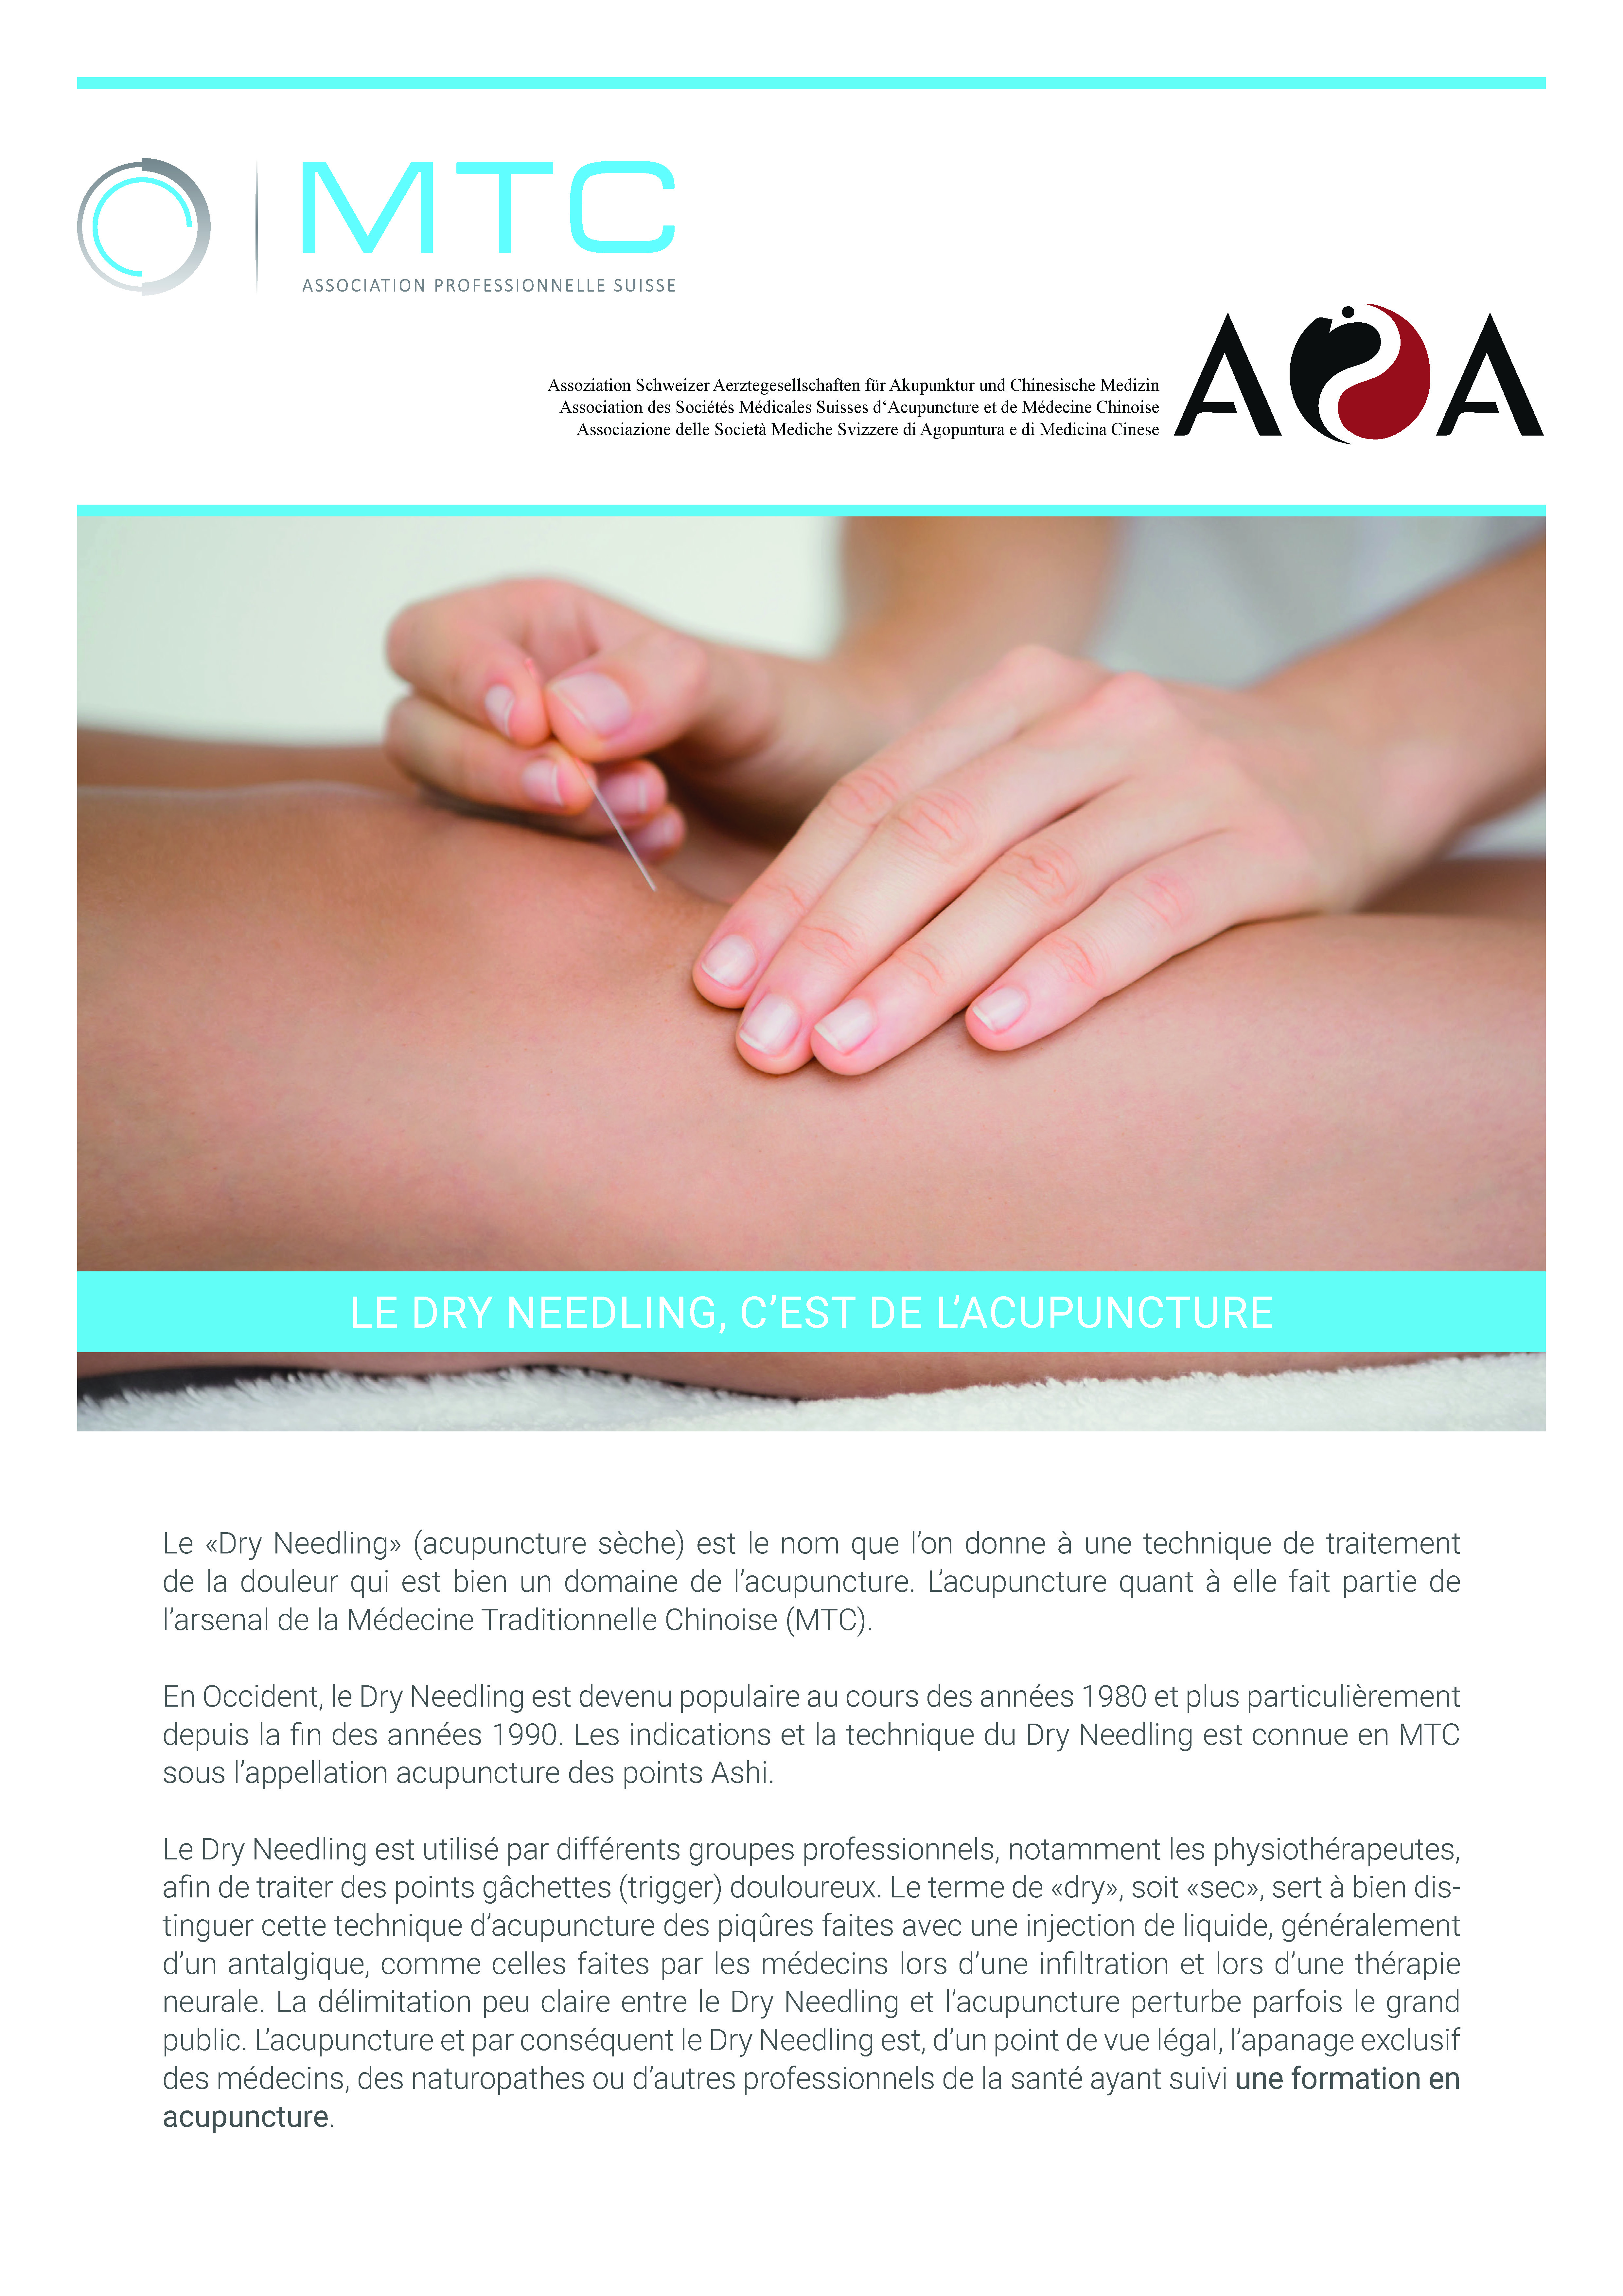 Brochure: Le Dry Needling, C’est De L’acupuncture